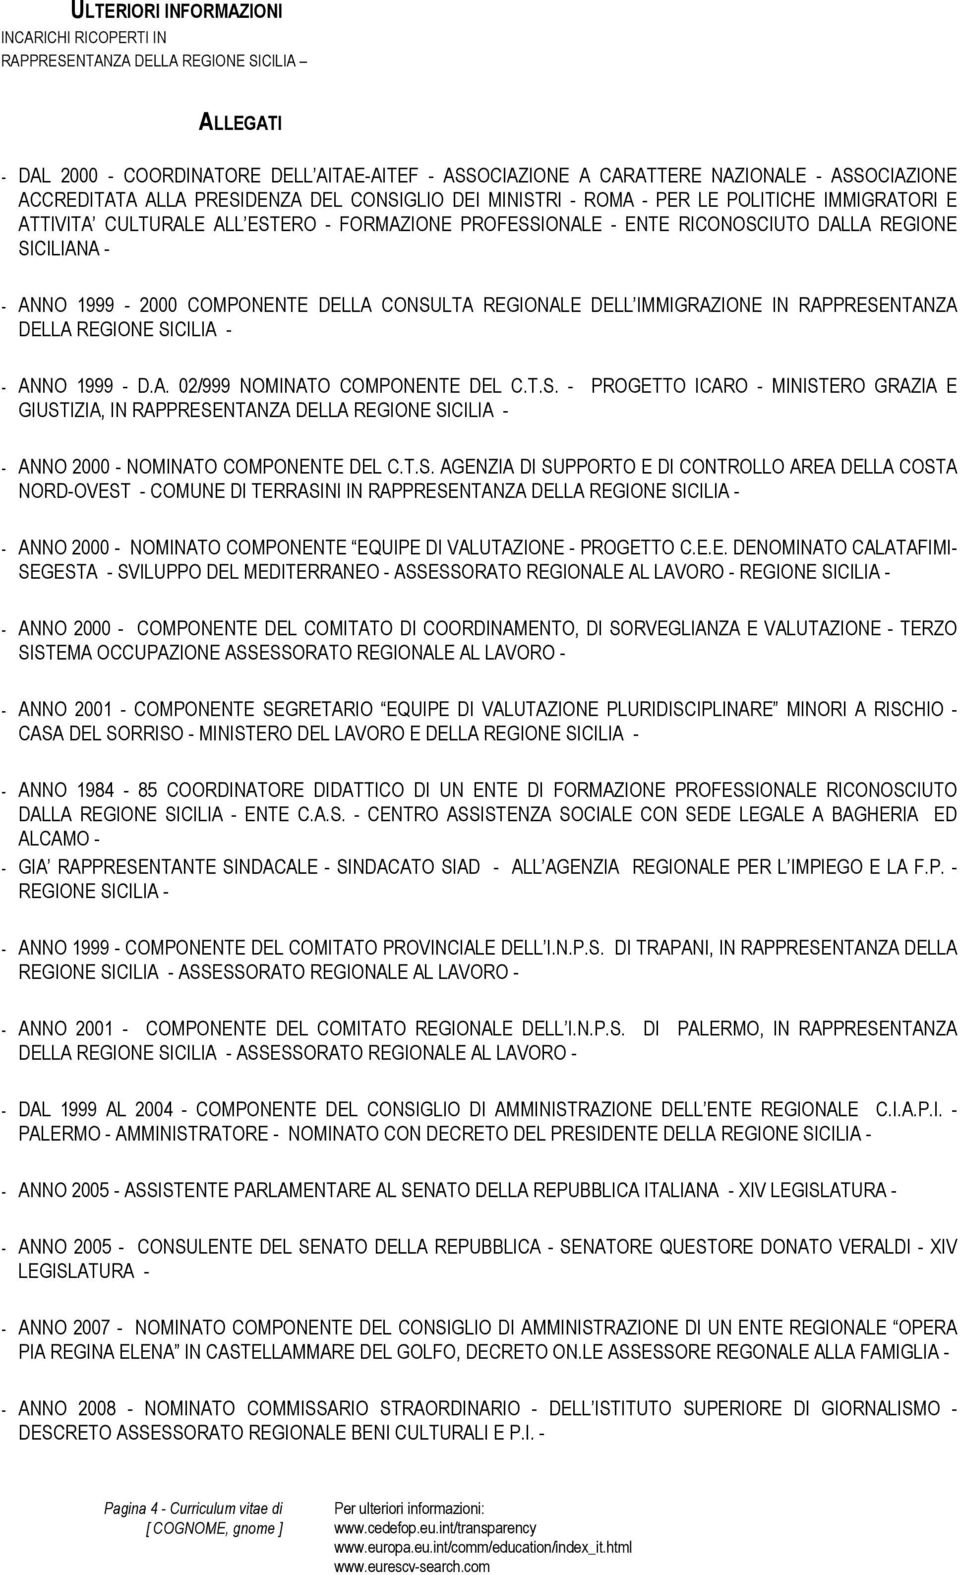 1999-2000 COMPONENTE DELLA CONSULTA REGIONALE DELL IMMIGRAZIONE IN RAPPRESENTANZA DELLA REGIONE SICILIA - - ANNO 1999 - D.A. 02/999 NOMINATO COMPONENTE DEL C.T.S. - PROGETTO ICARO - MINISTERO GRAZIA E GIUSTIZIA, IN RAPPRESENTANZA DELLA REGIONE SICILIA - - ANNO 2000 - NOMINATO COMPONENTE DEL C.